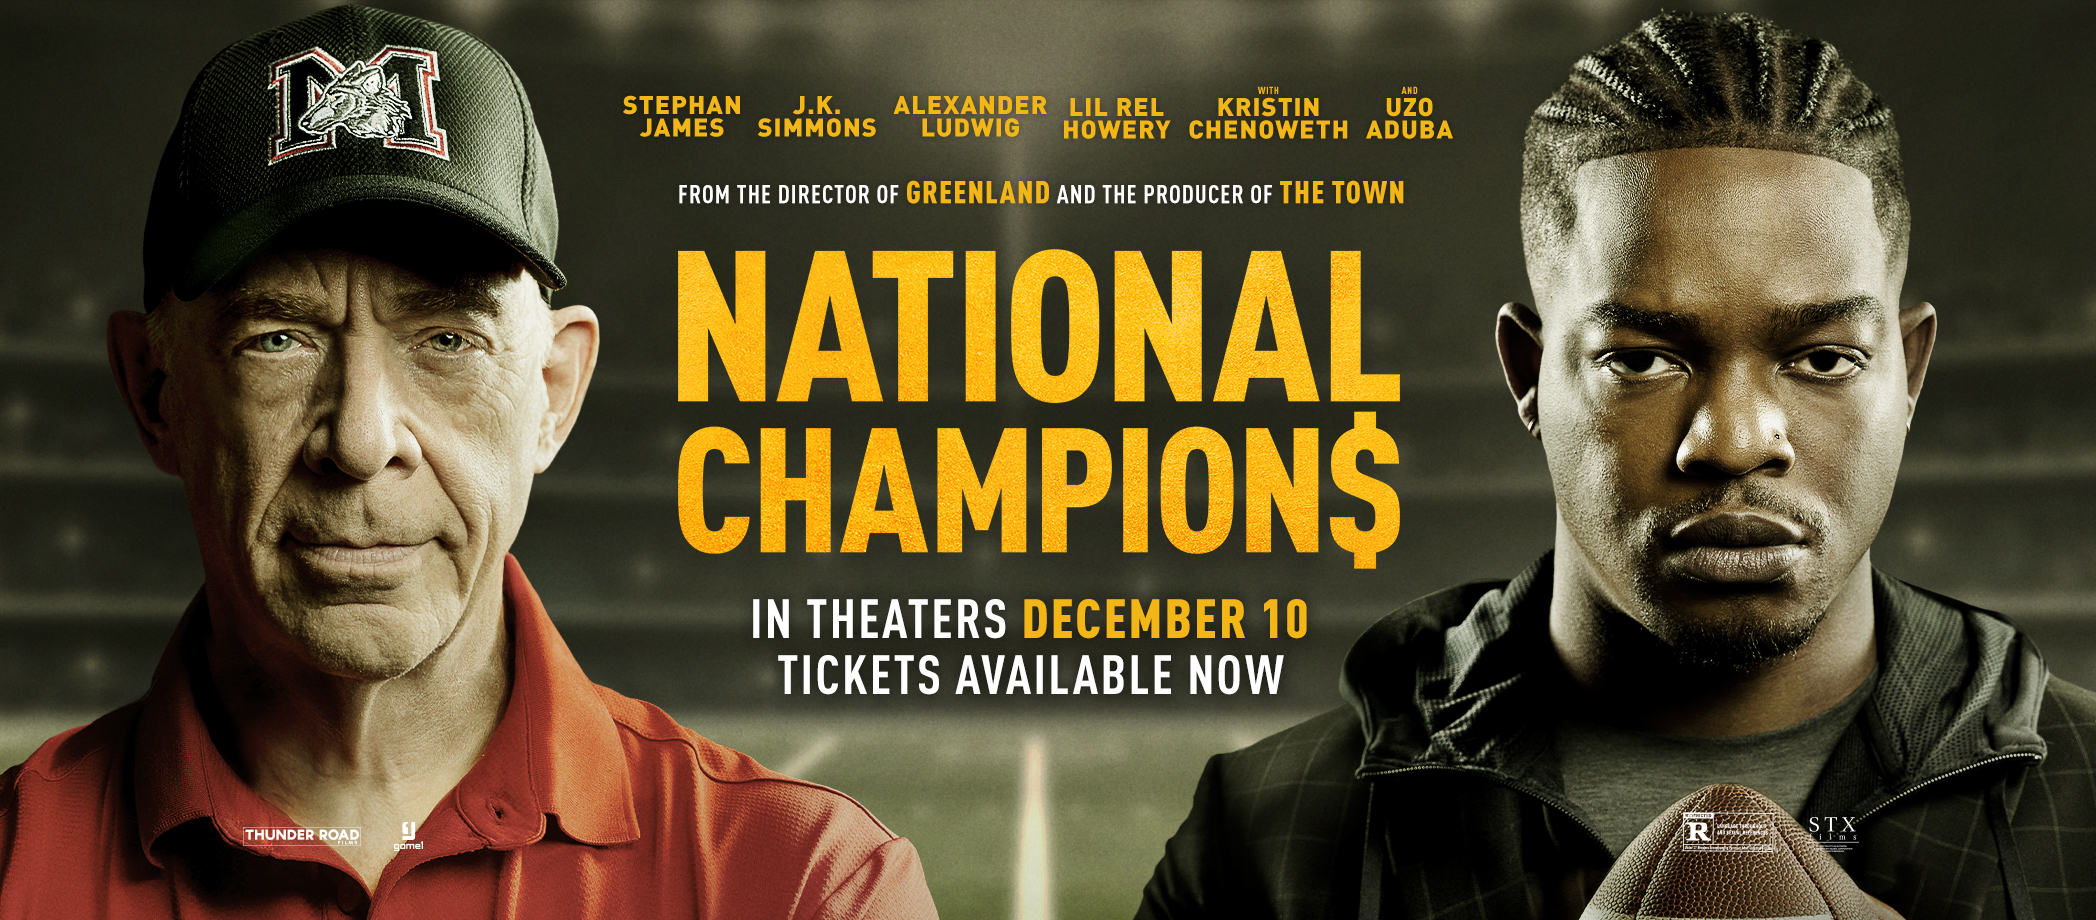 ¿Quieres ir al cine? Tenemos pases para el pre-estreno de la película NATIONAL CHAMPIONS en #Atlanta #Dallas